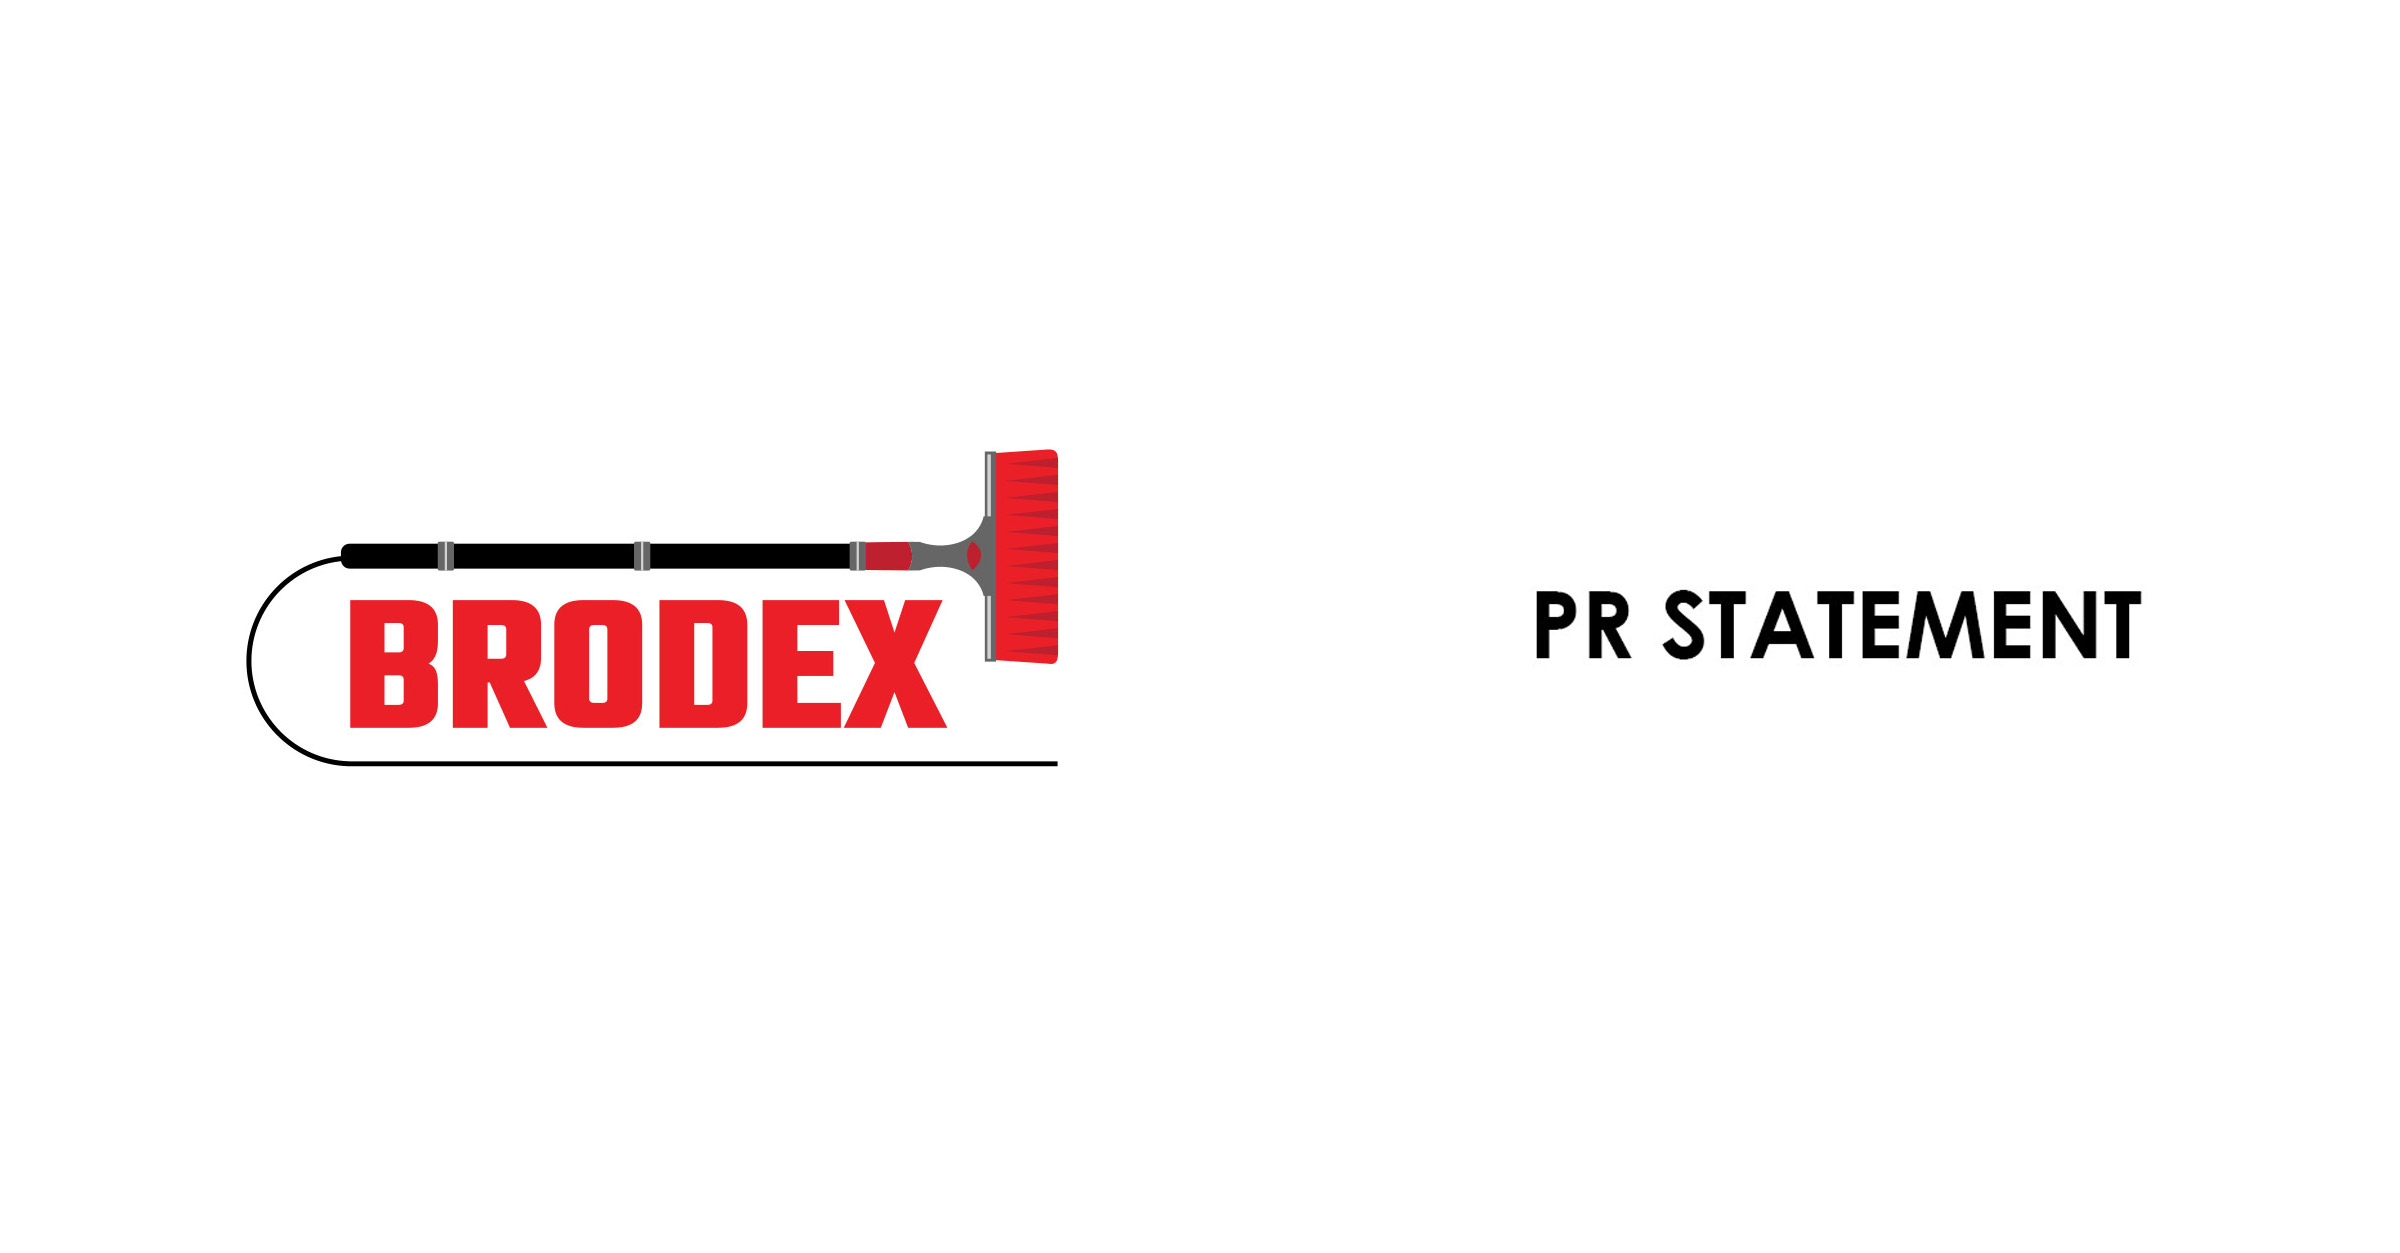 Brodex COVID-19 Update